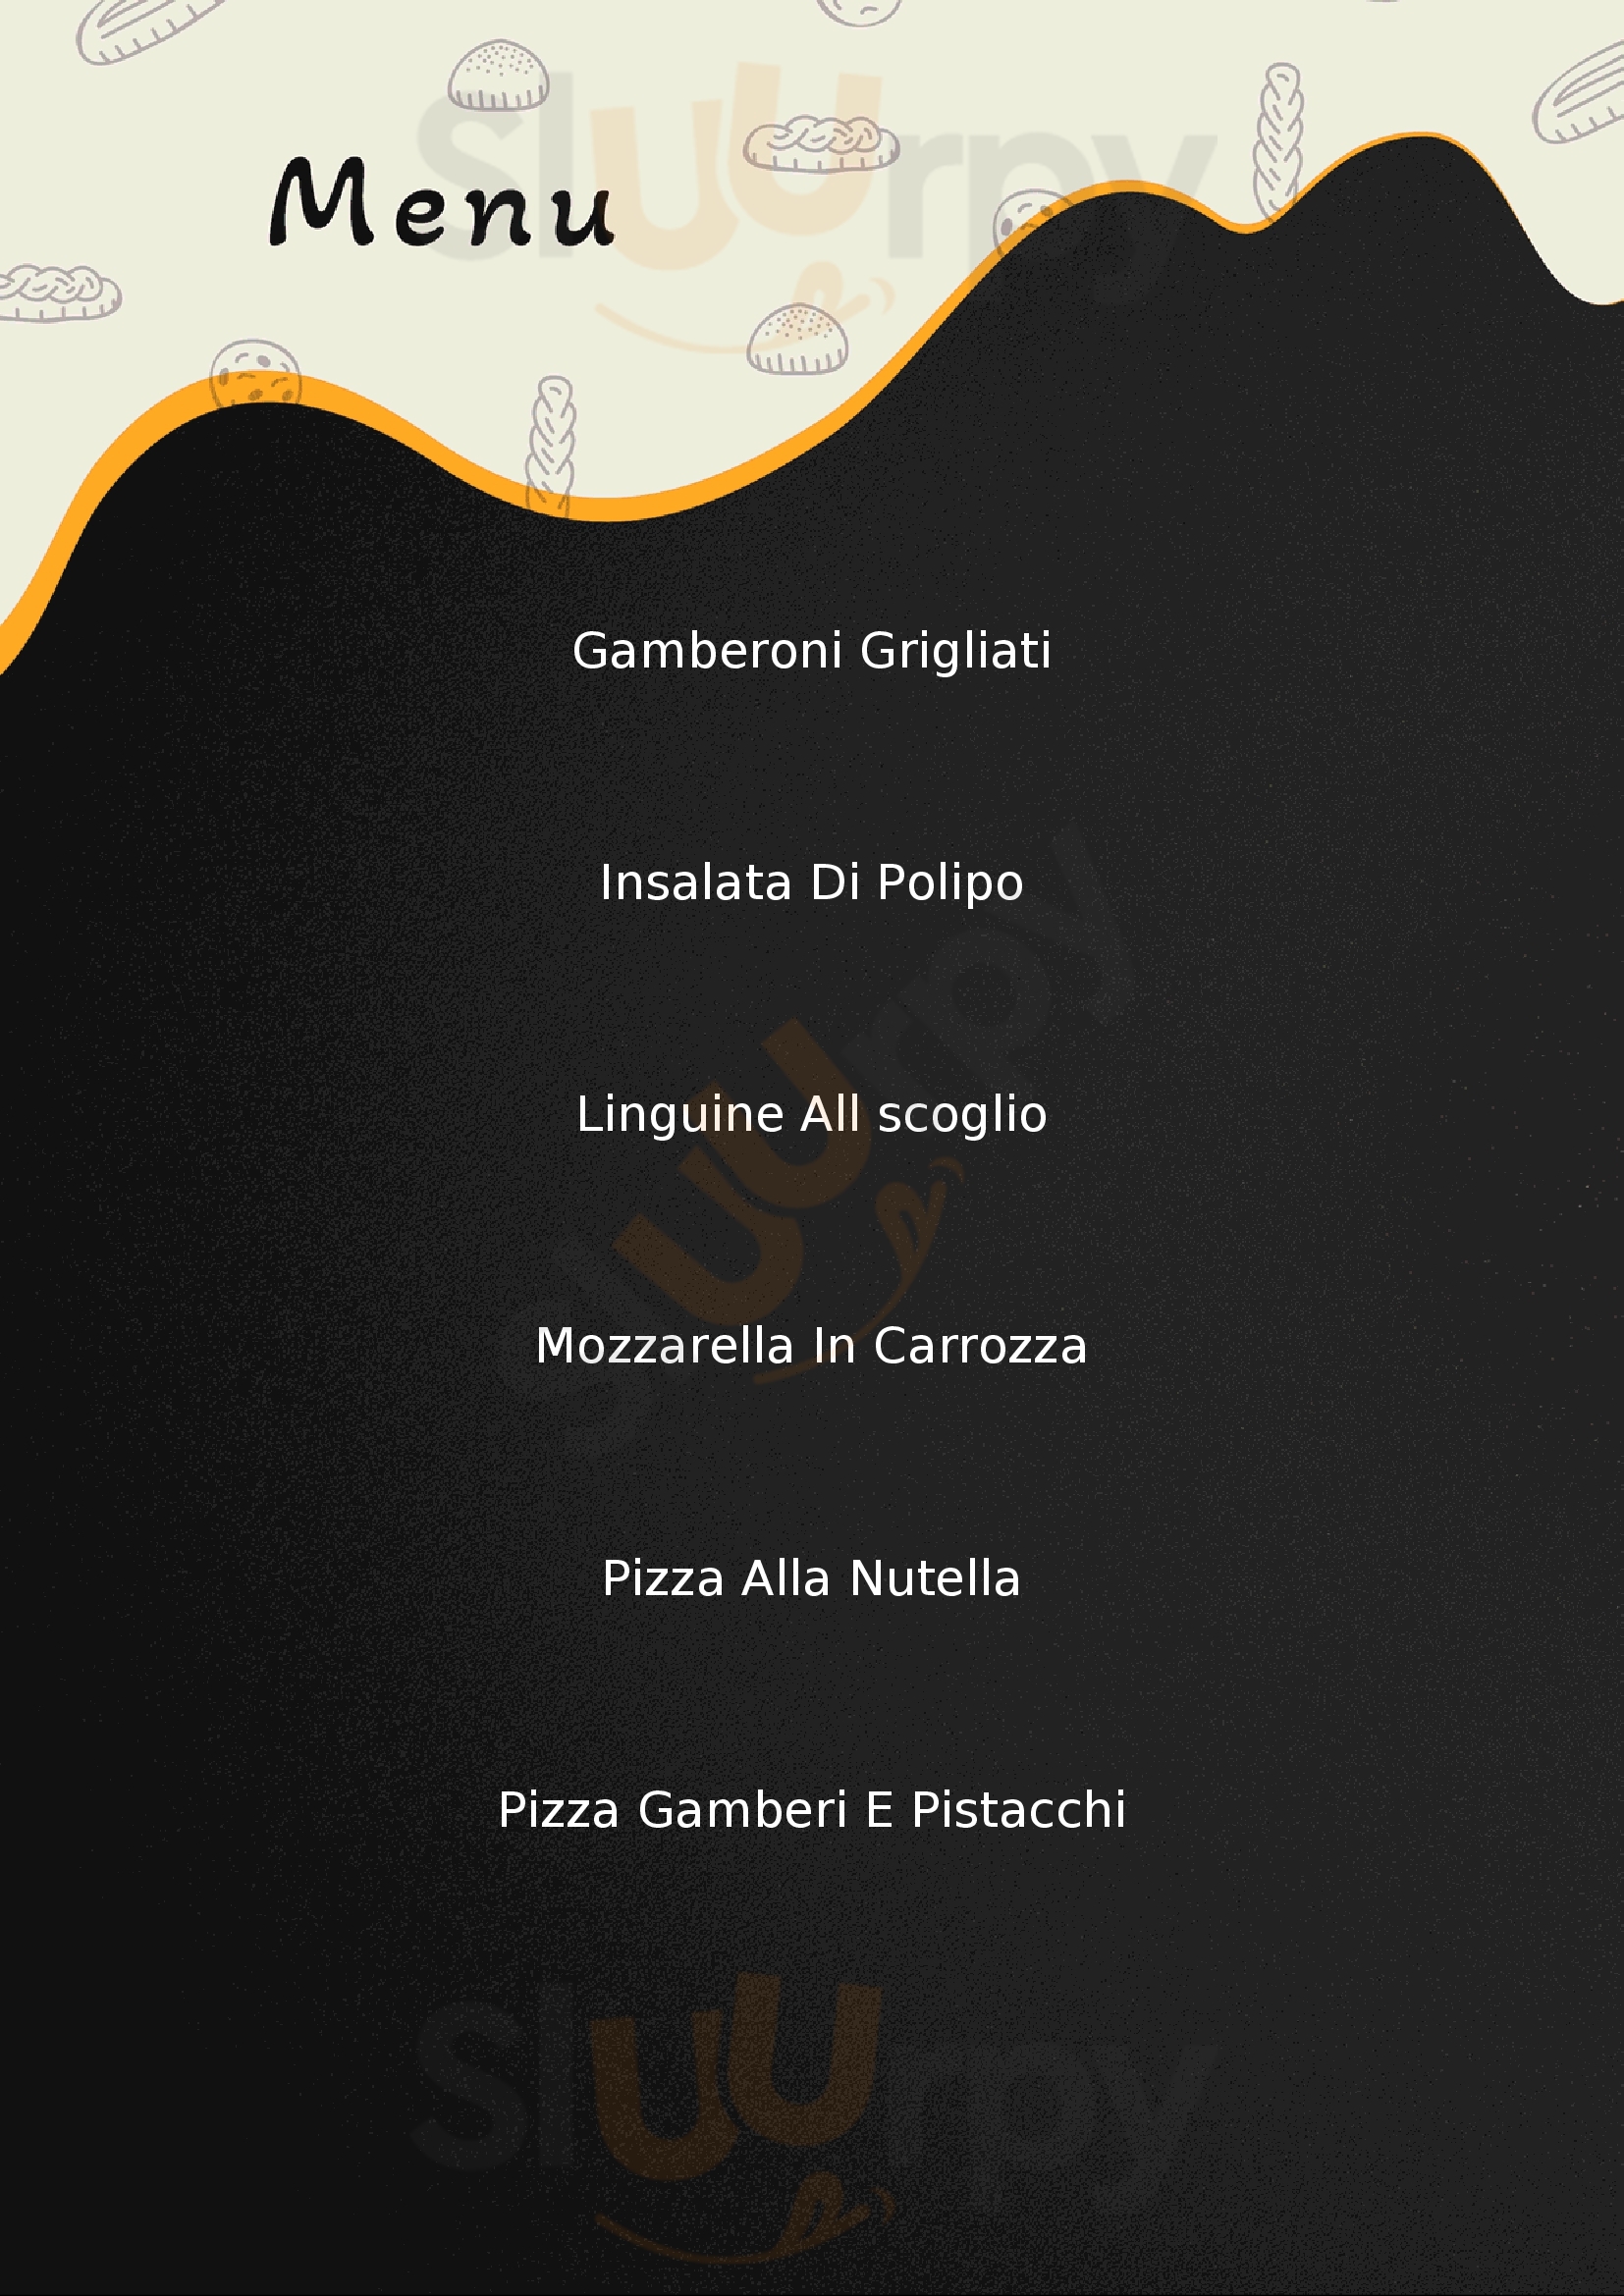 Villa Rossella Trattoria - Pizzeria Menfi menù 1 pagina